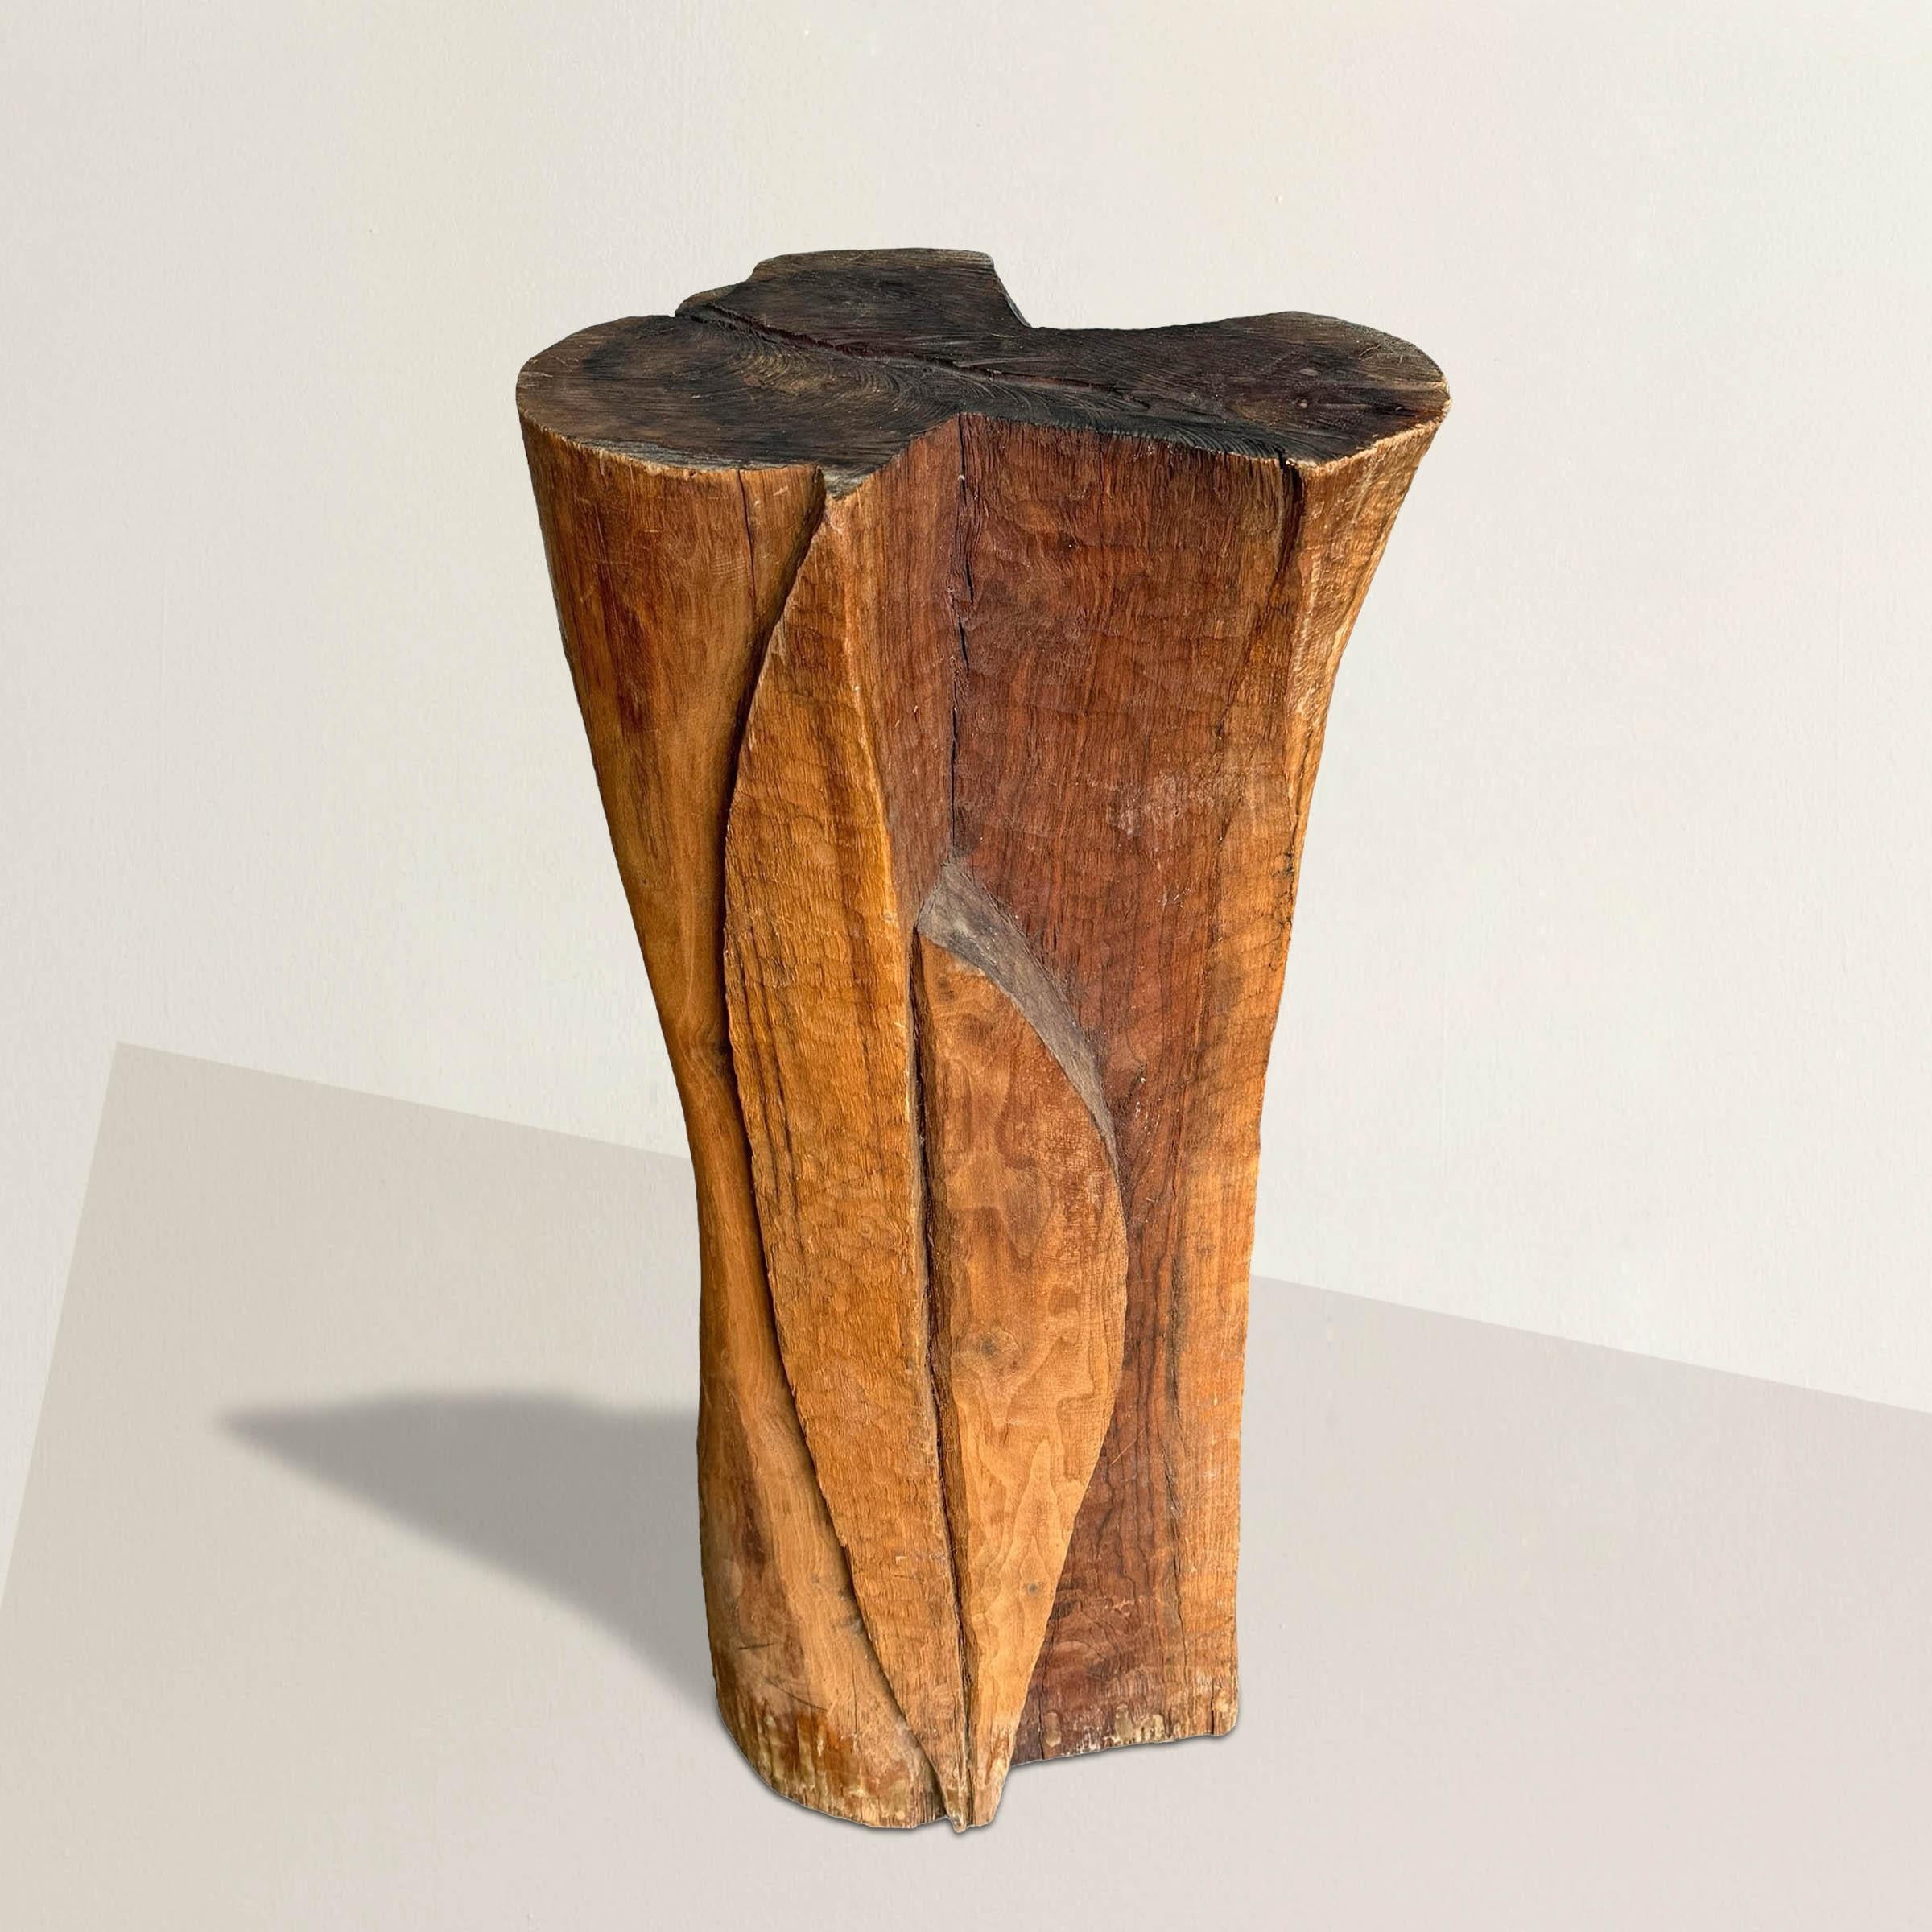 Ce piédestal en bois moderniste américain du début du XXe siècle, sculpté à la main, est un chef-d'œuvre sculptural, évoquant l'essence de l'expression artistique et de l'aspect pratique. Ornée de milliers d'éclats méticuleusement sculptés, sa